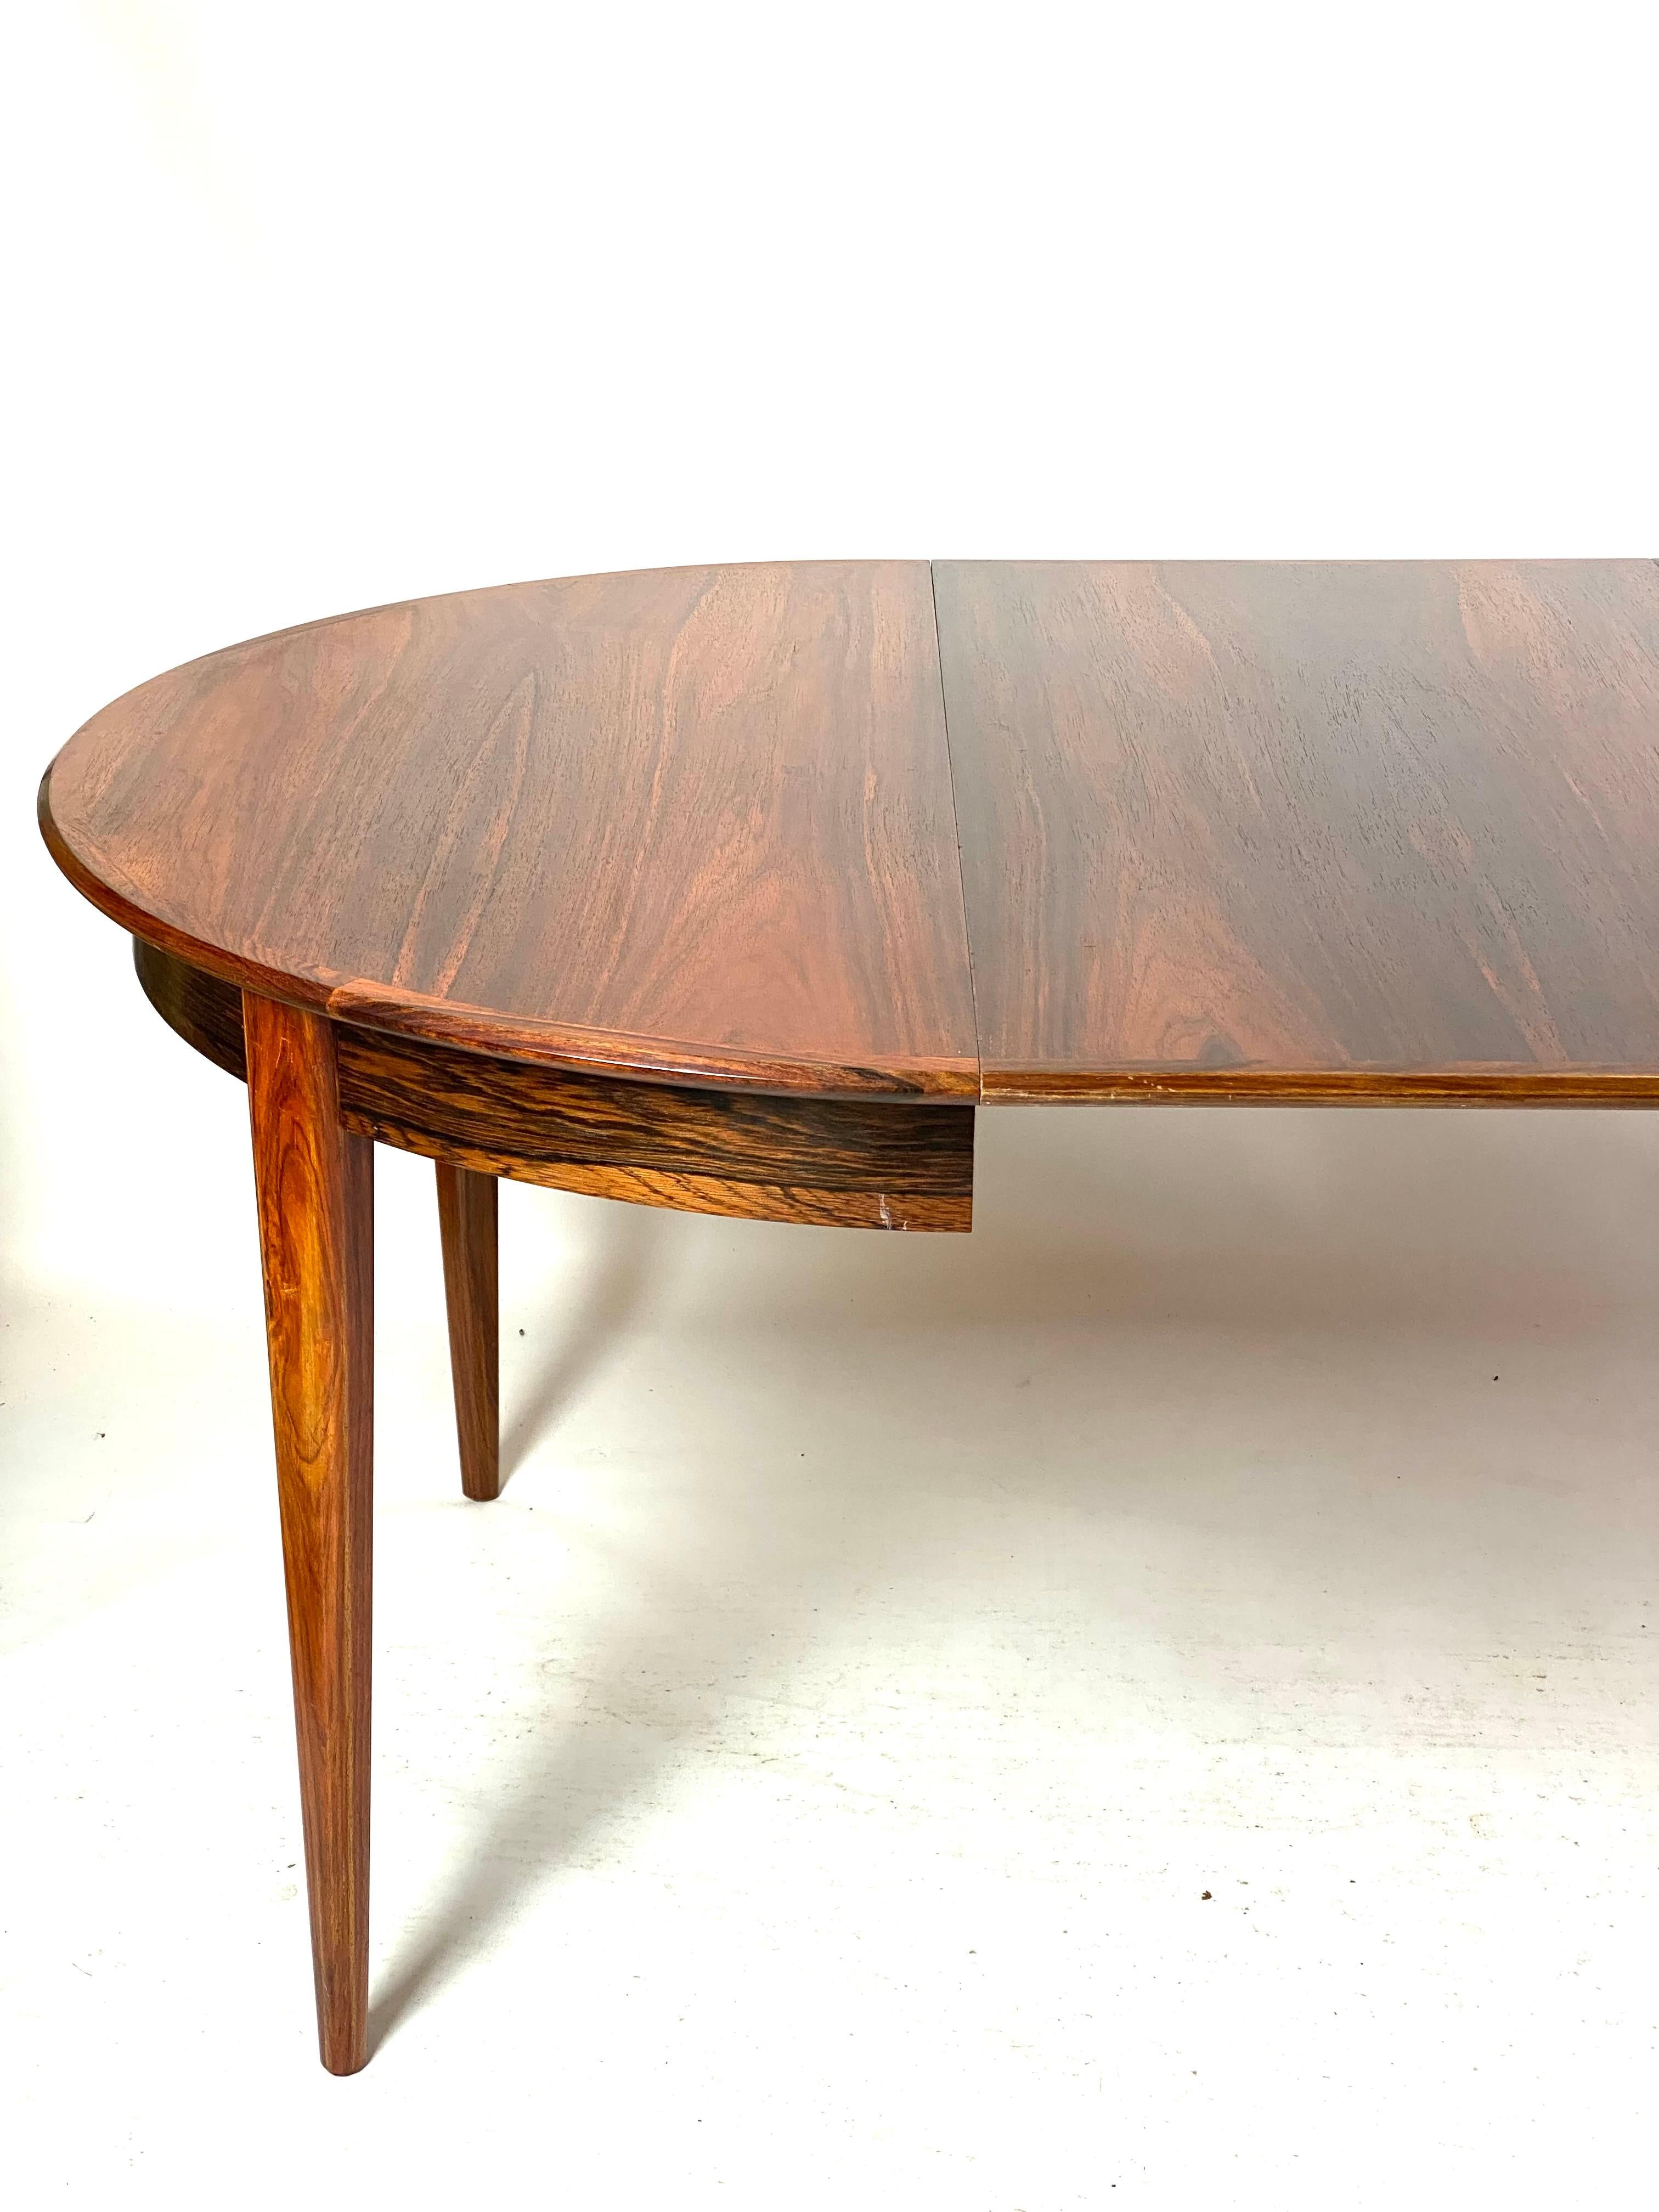 La table à manger en bois de rose, créée par le design danois des années 1960, est un meuble emblématique qui résume l'esthétique élégante et moderne de l'époque.

Le bois de rose donne à la table une couleur chaude et profonde, tandis que ses